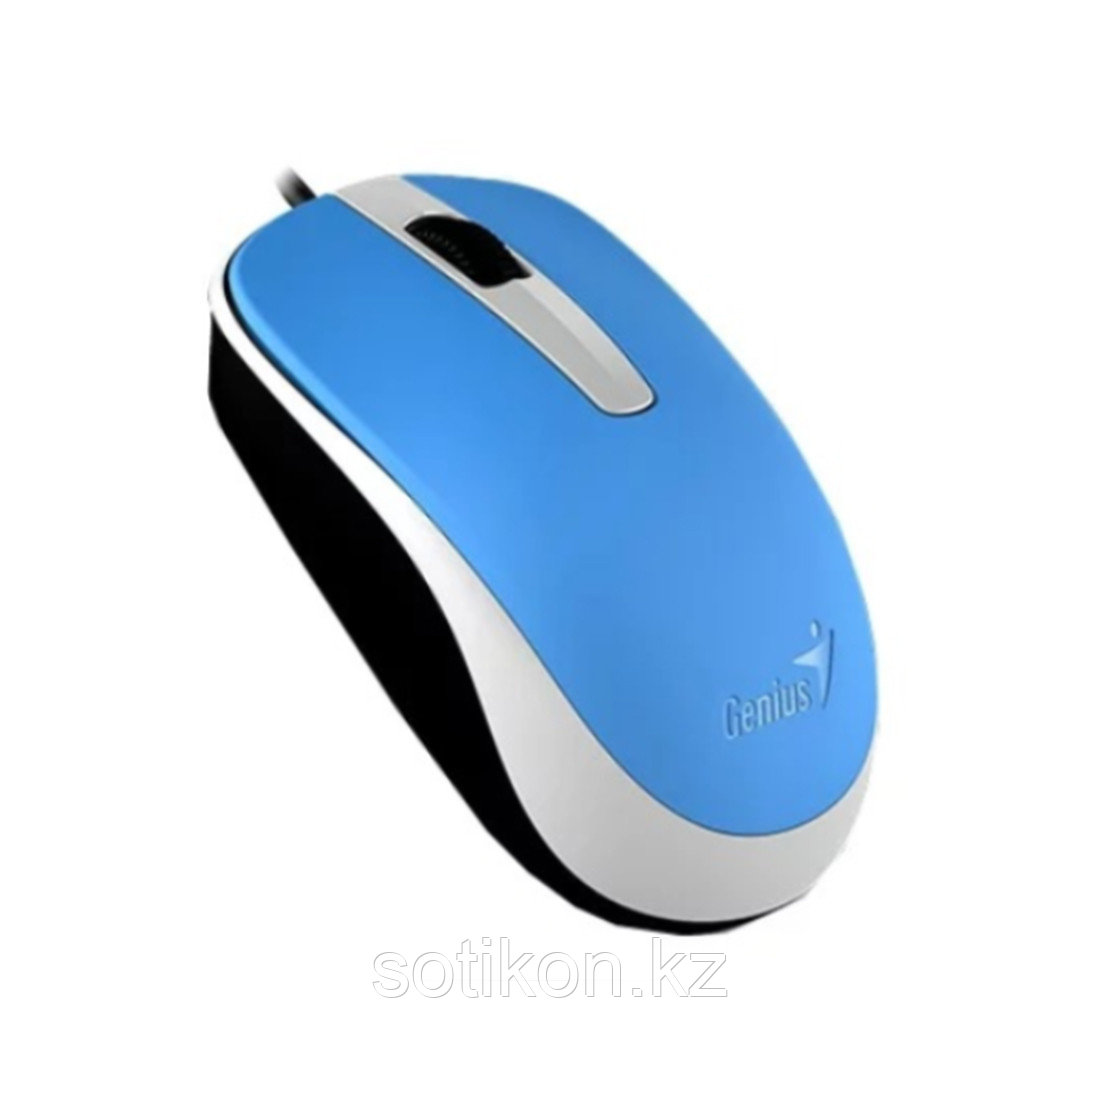 Компьютерная мышь Genius DX-120 Blue